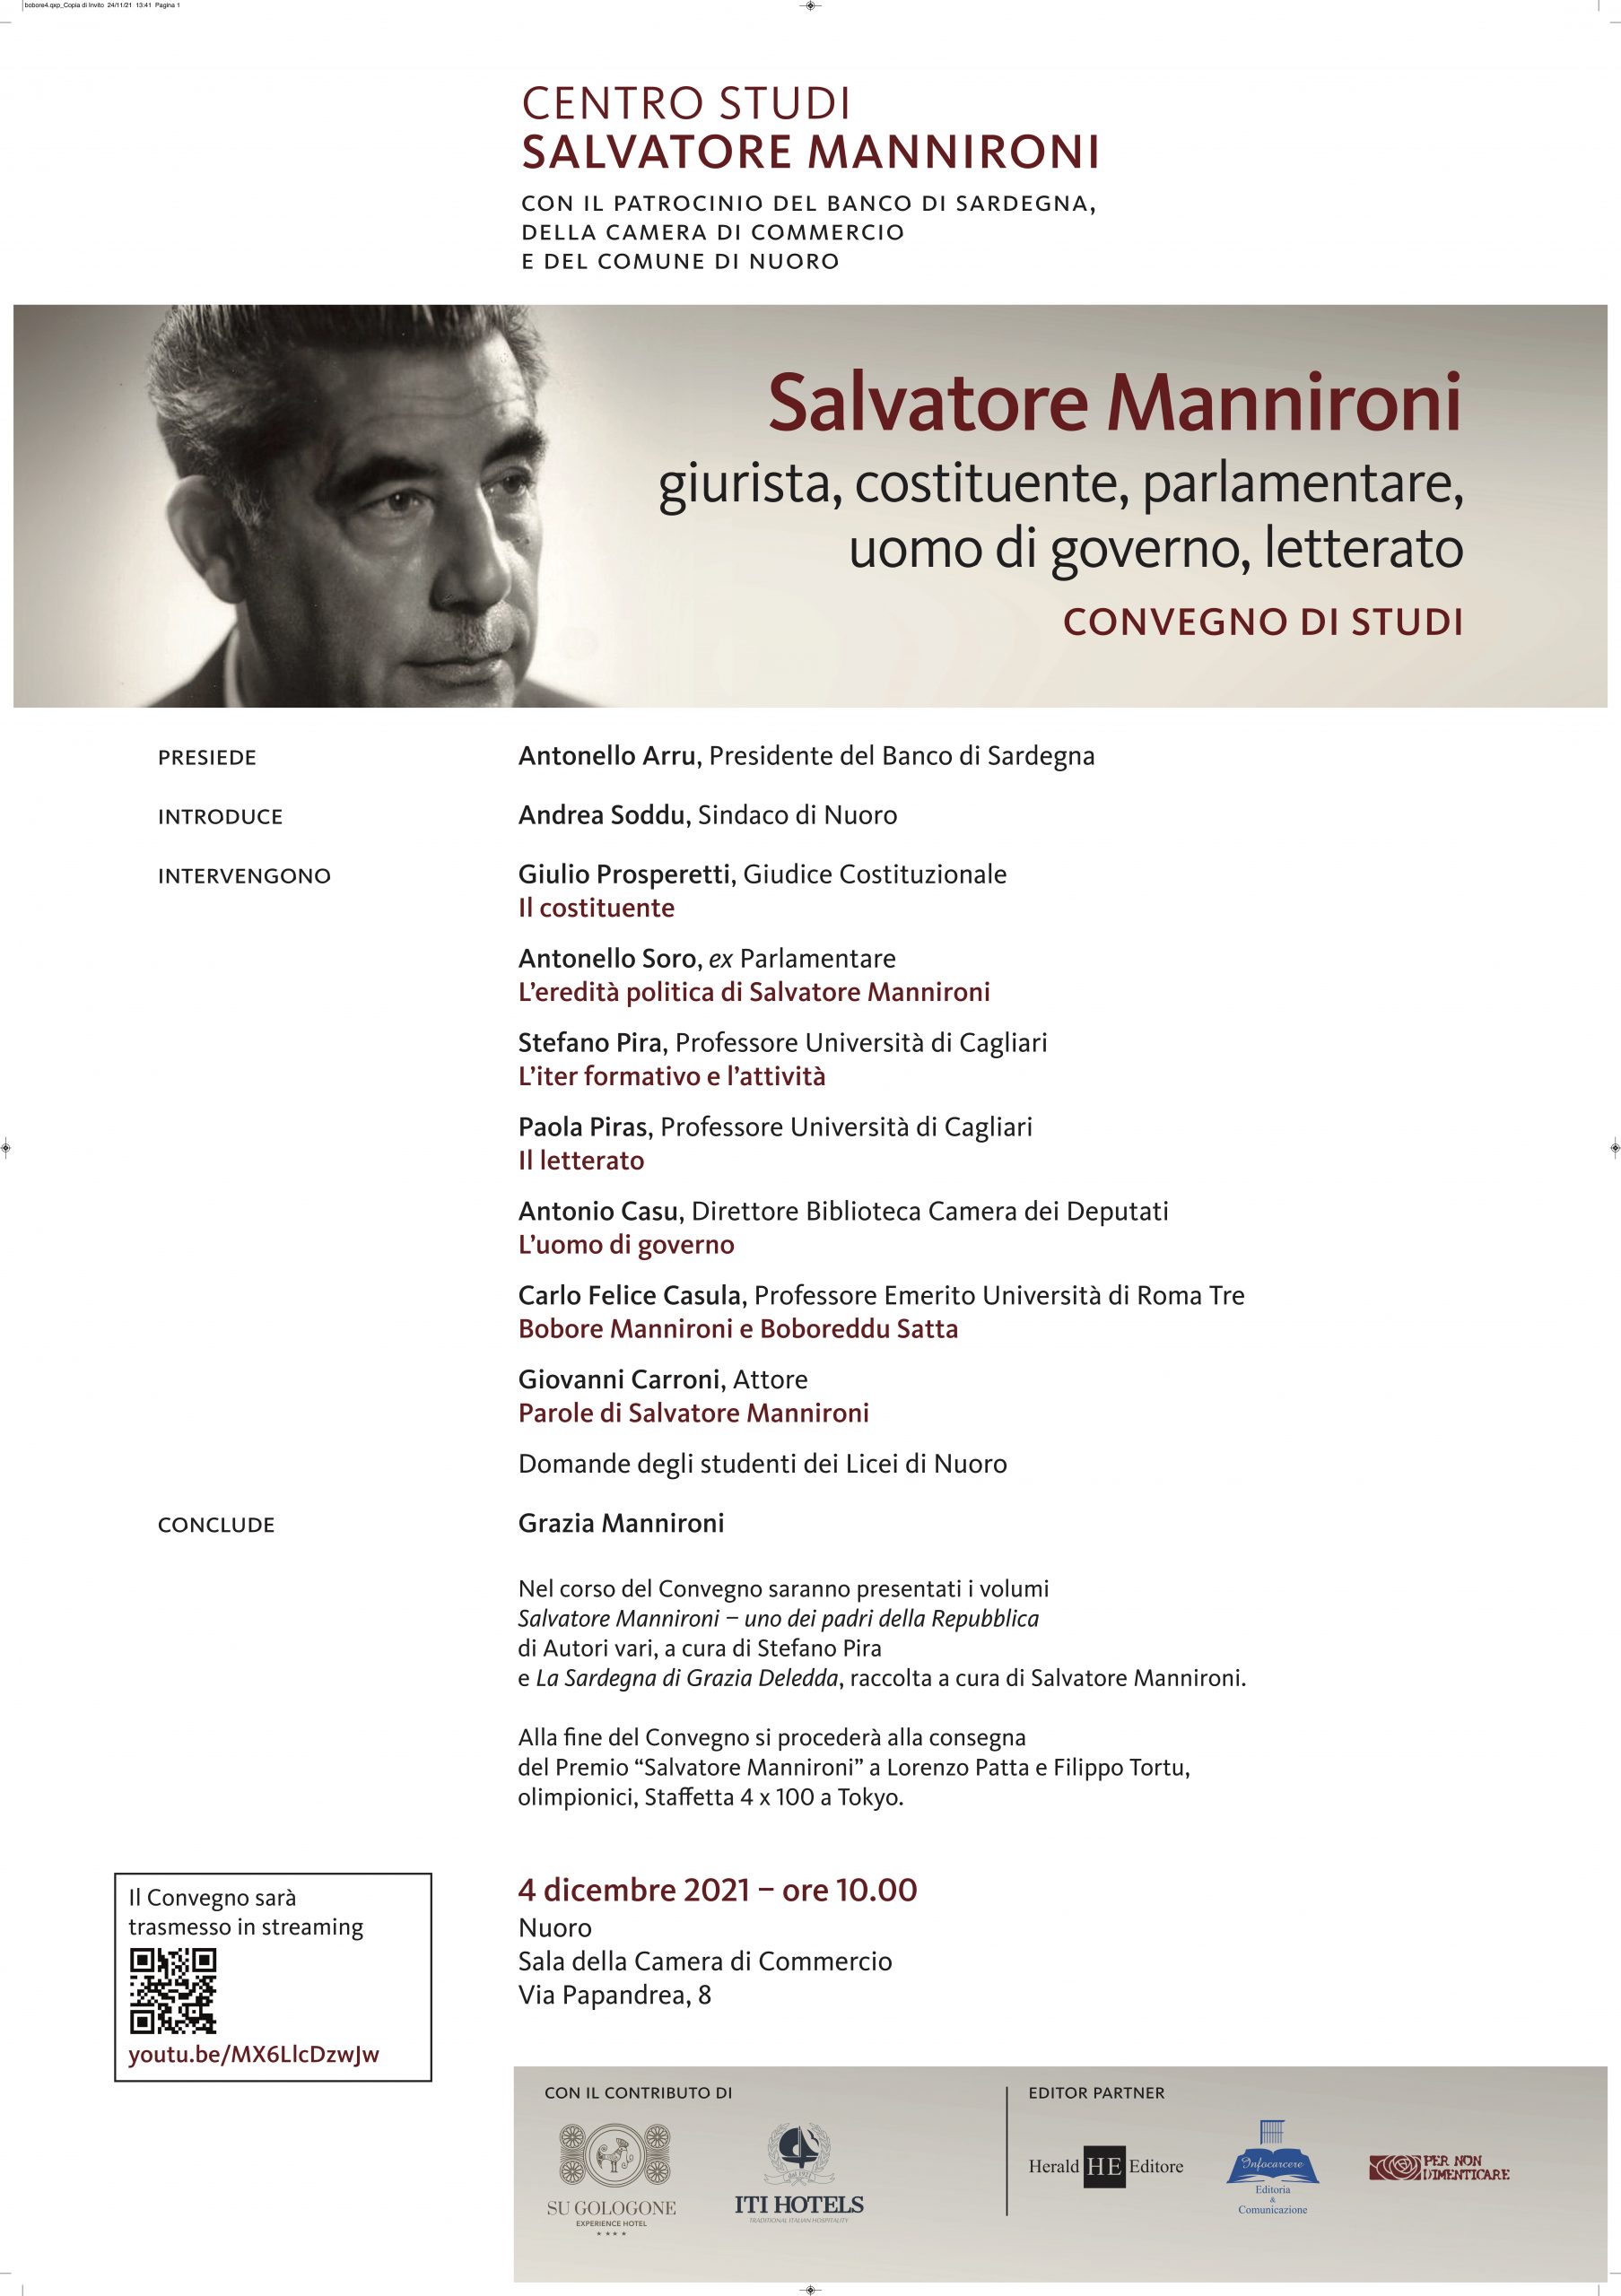 Sabato 4 dicembre convegno su Salvatore Mannironi